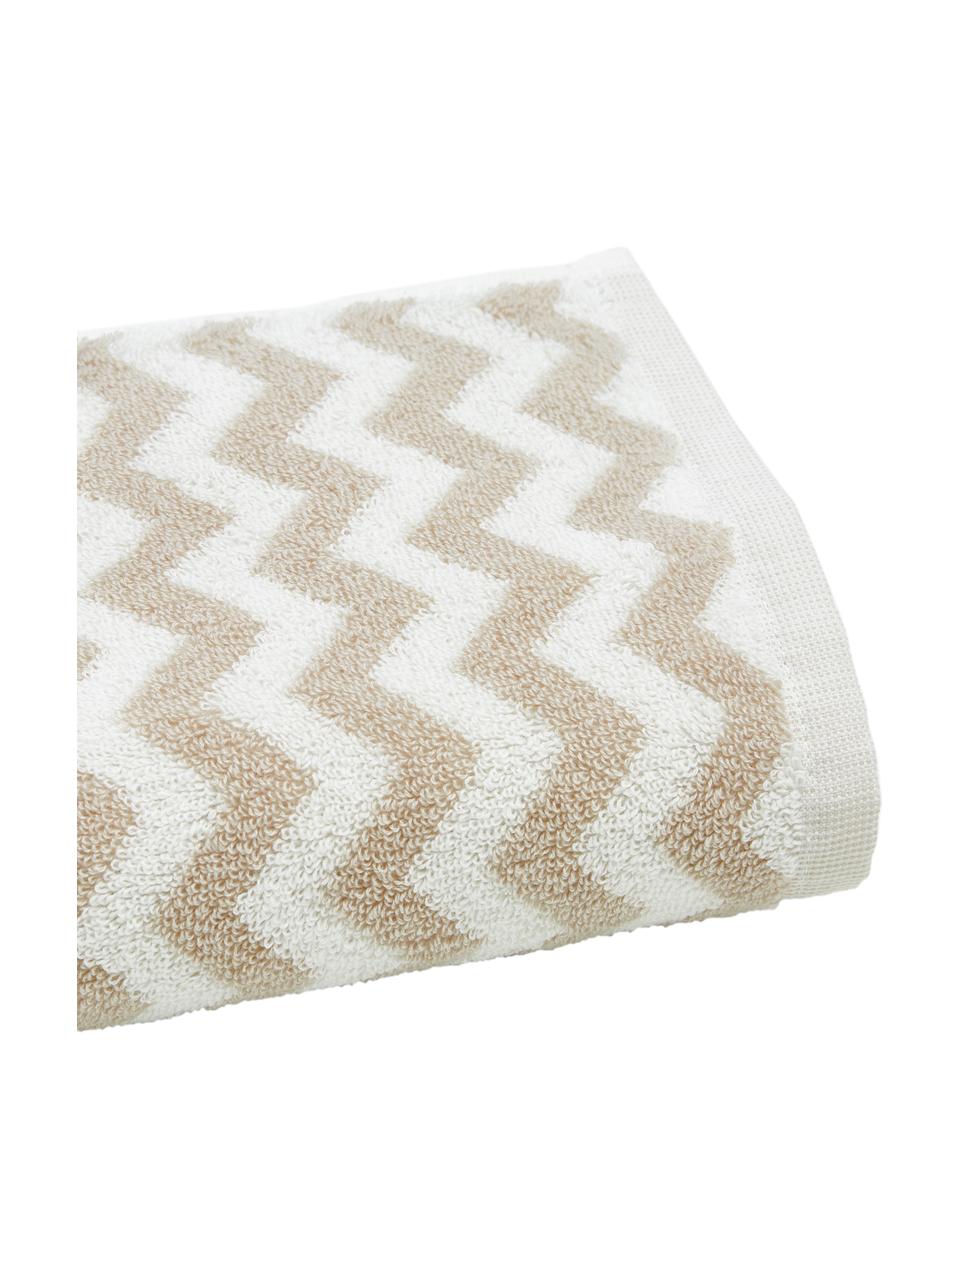 Handdoek Liv met zigzag patroon, Crèmewit & zandkleurig, patroon, Handdoek, B 50 x L 100 cm, 2 stuks